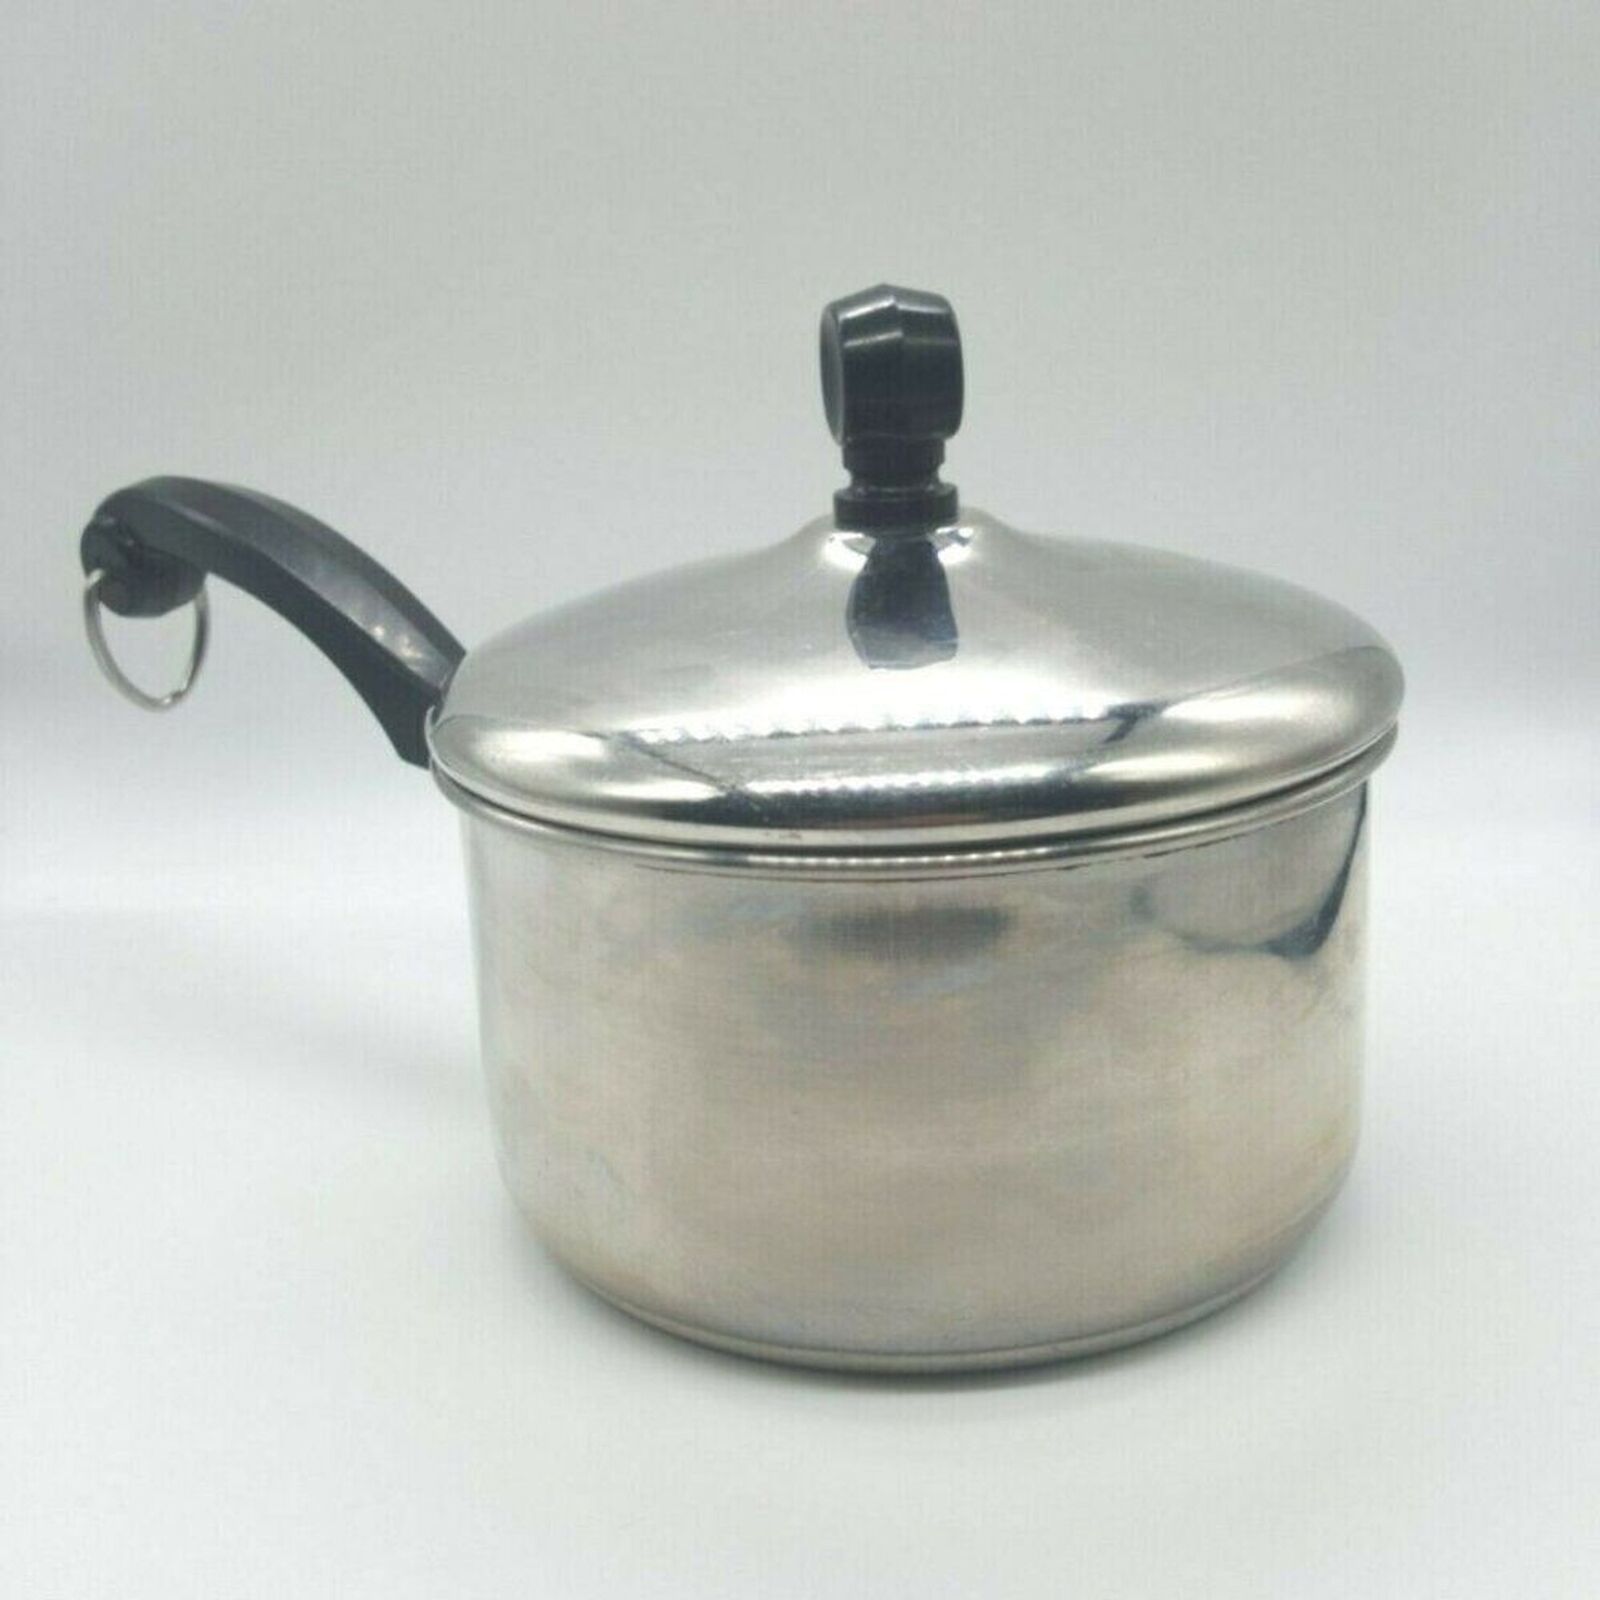 Vintage Farberware 1qt Sauce Pot/Pan Aluminum Clad